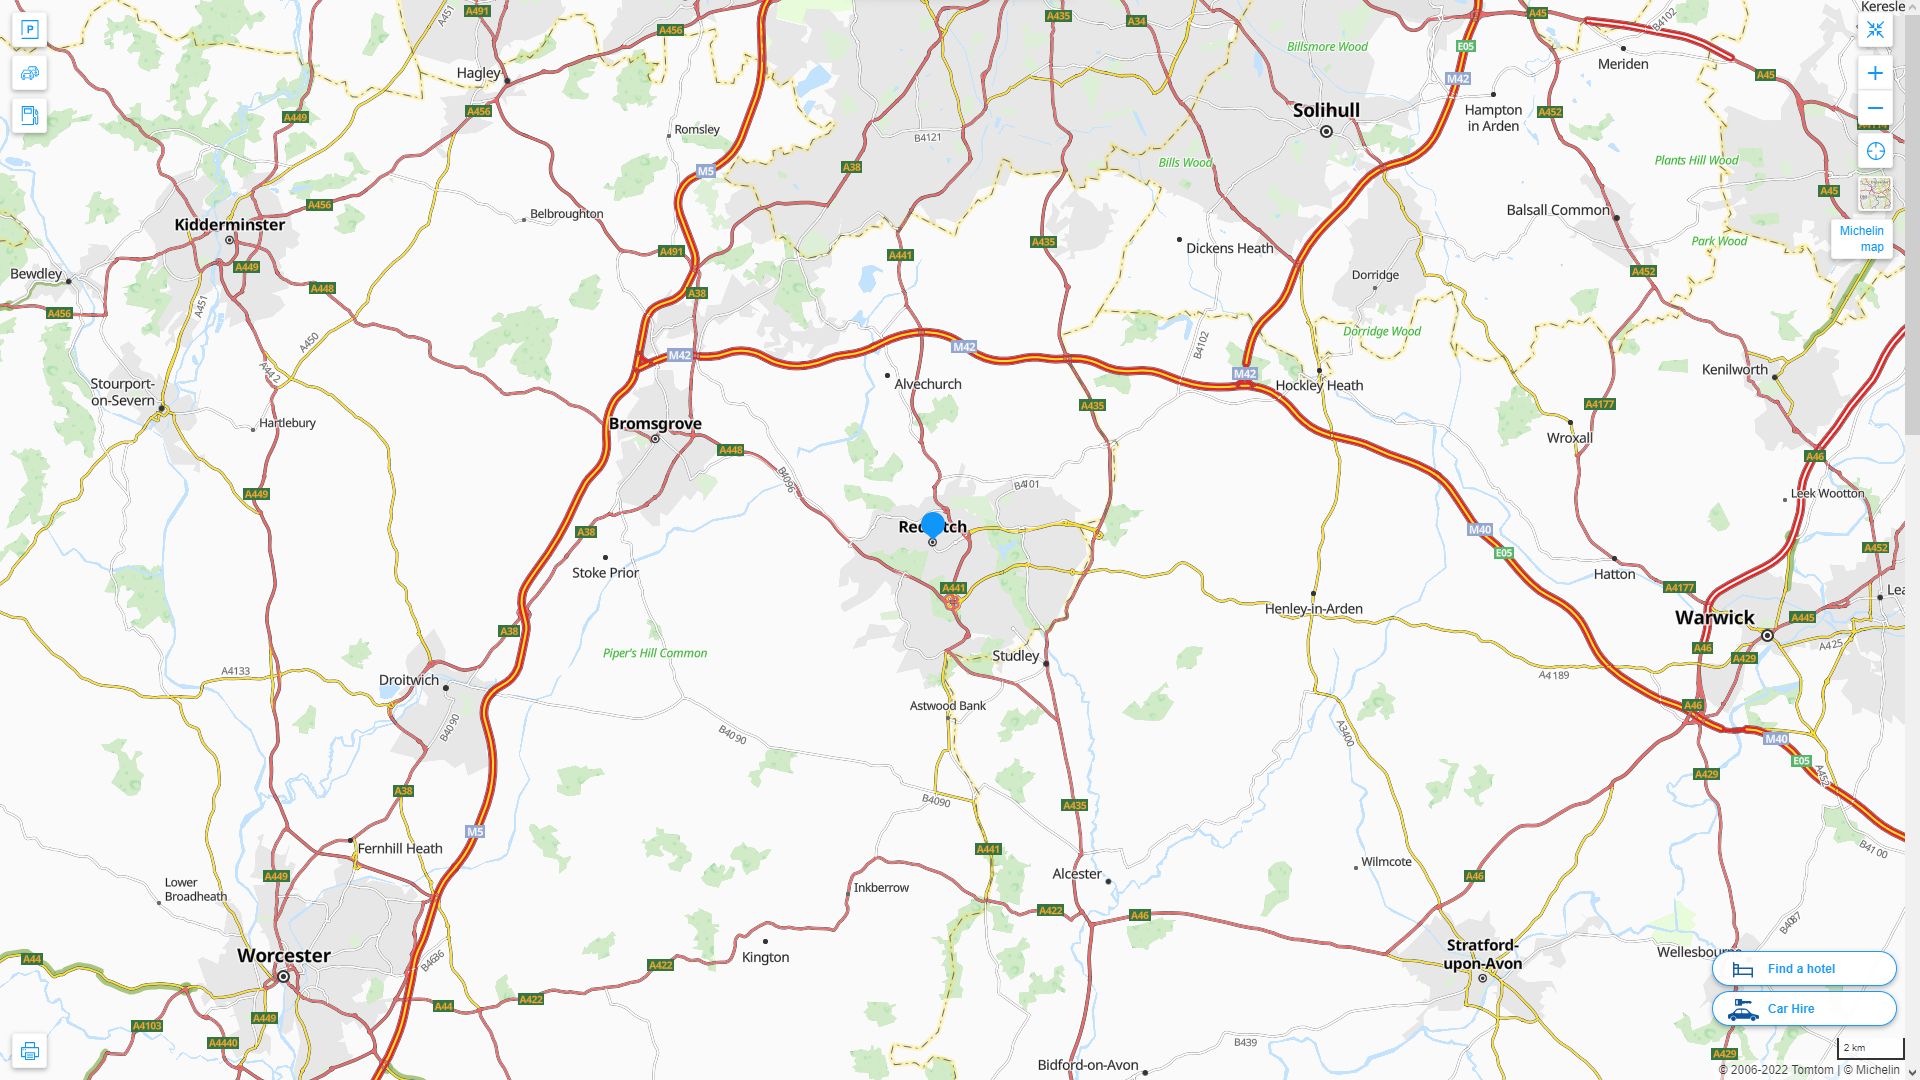 Redditch Royaume Uni Autoroute et carte routiere